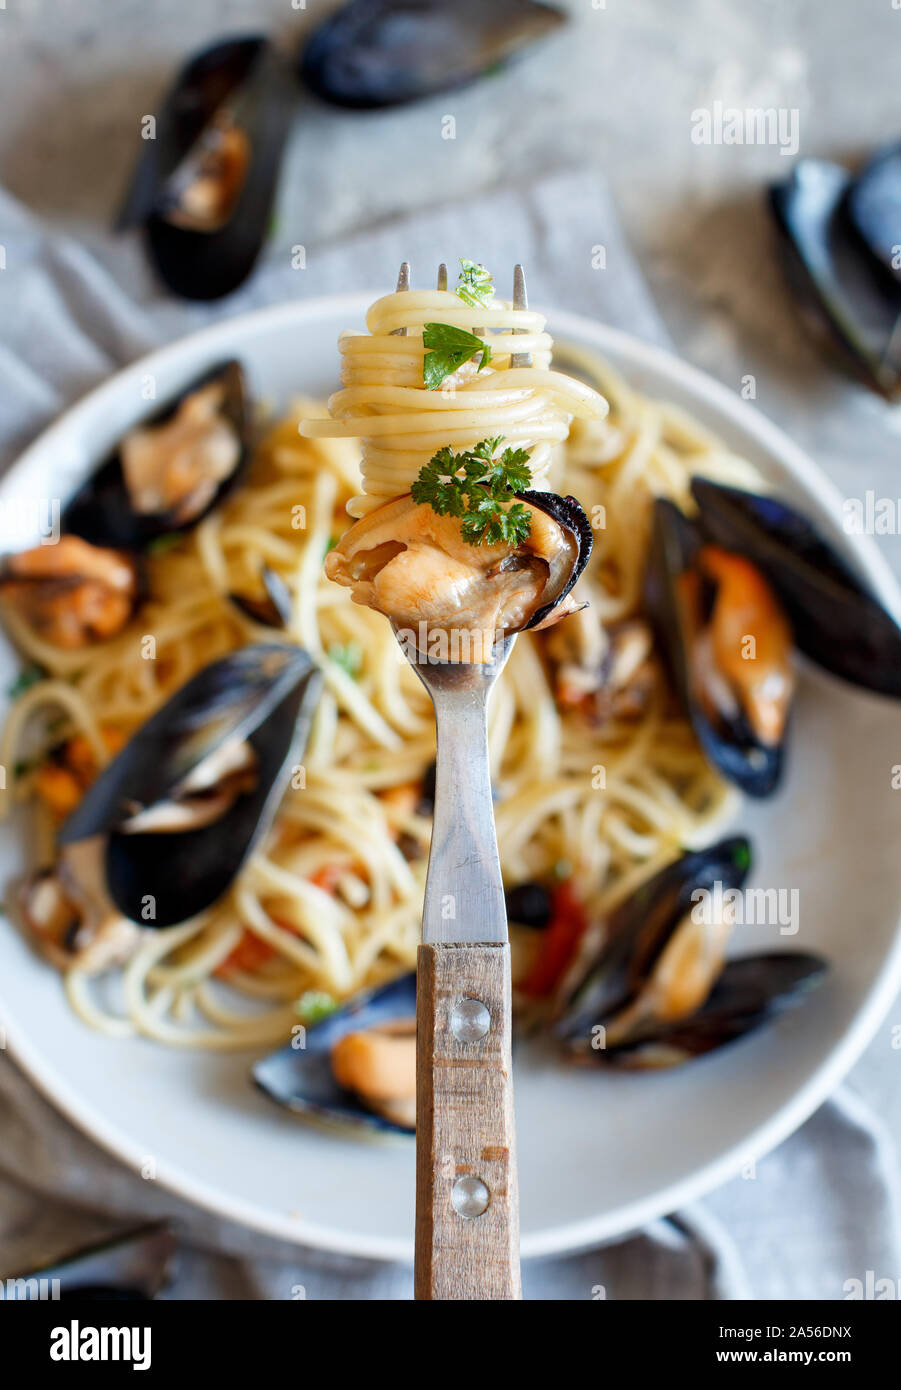 Spaghetti mit Muscheln und Tomaten italienisch Meeresfrüchte pasta Top View Stockfoto